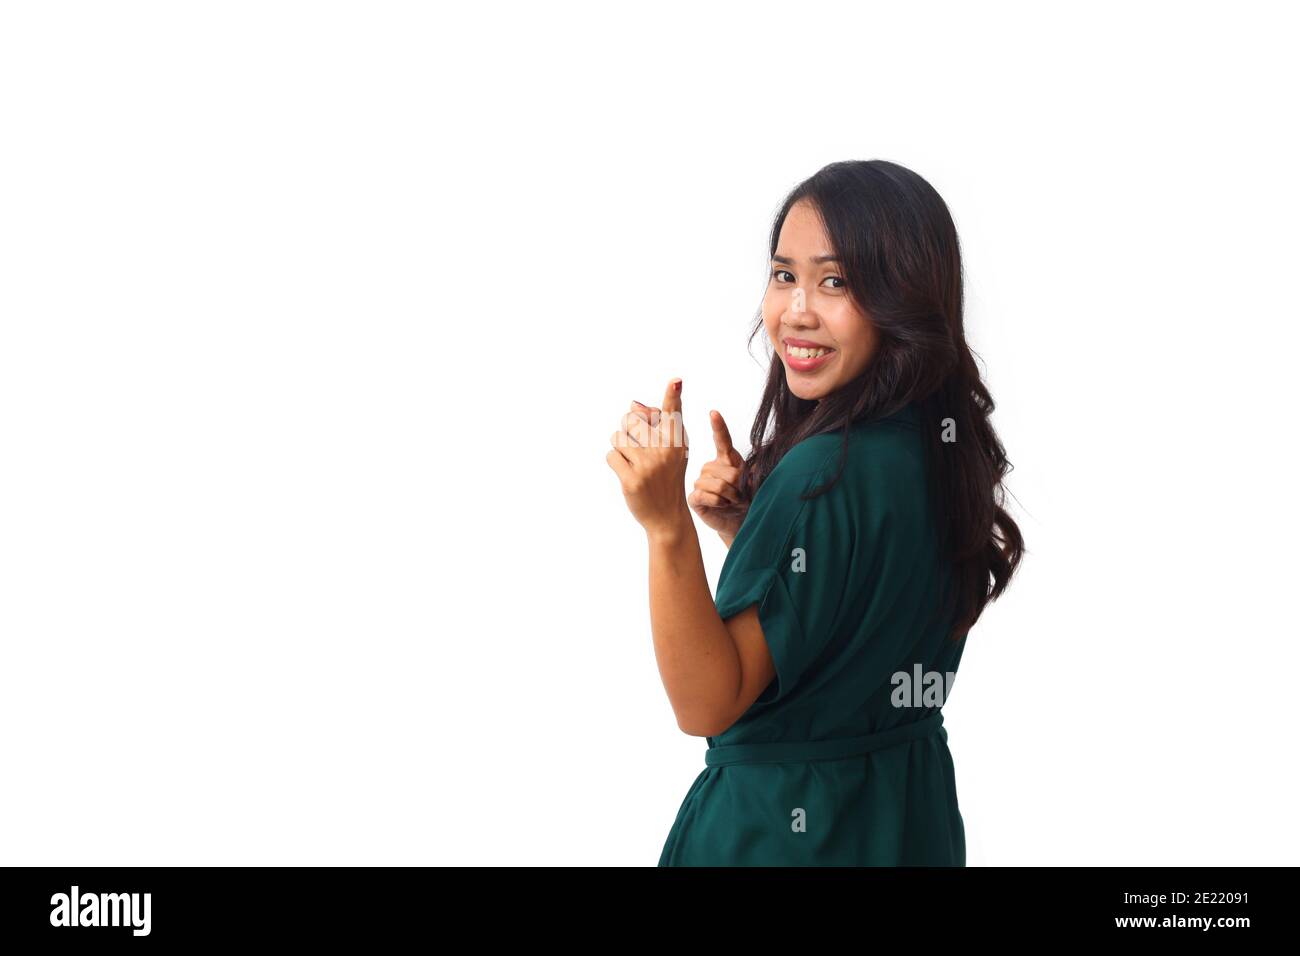 Ritratto del profilo laterale una giovane donna asiatica sorridente mentre guarda e punta una macchina fotografica. Isolato su sfondo bianco con copyspace Foto Stock